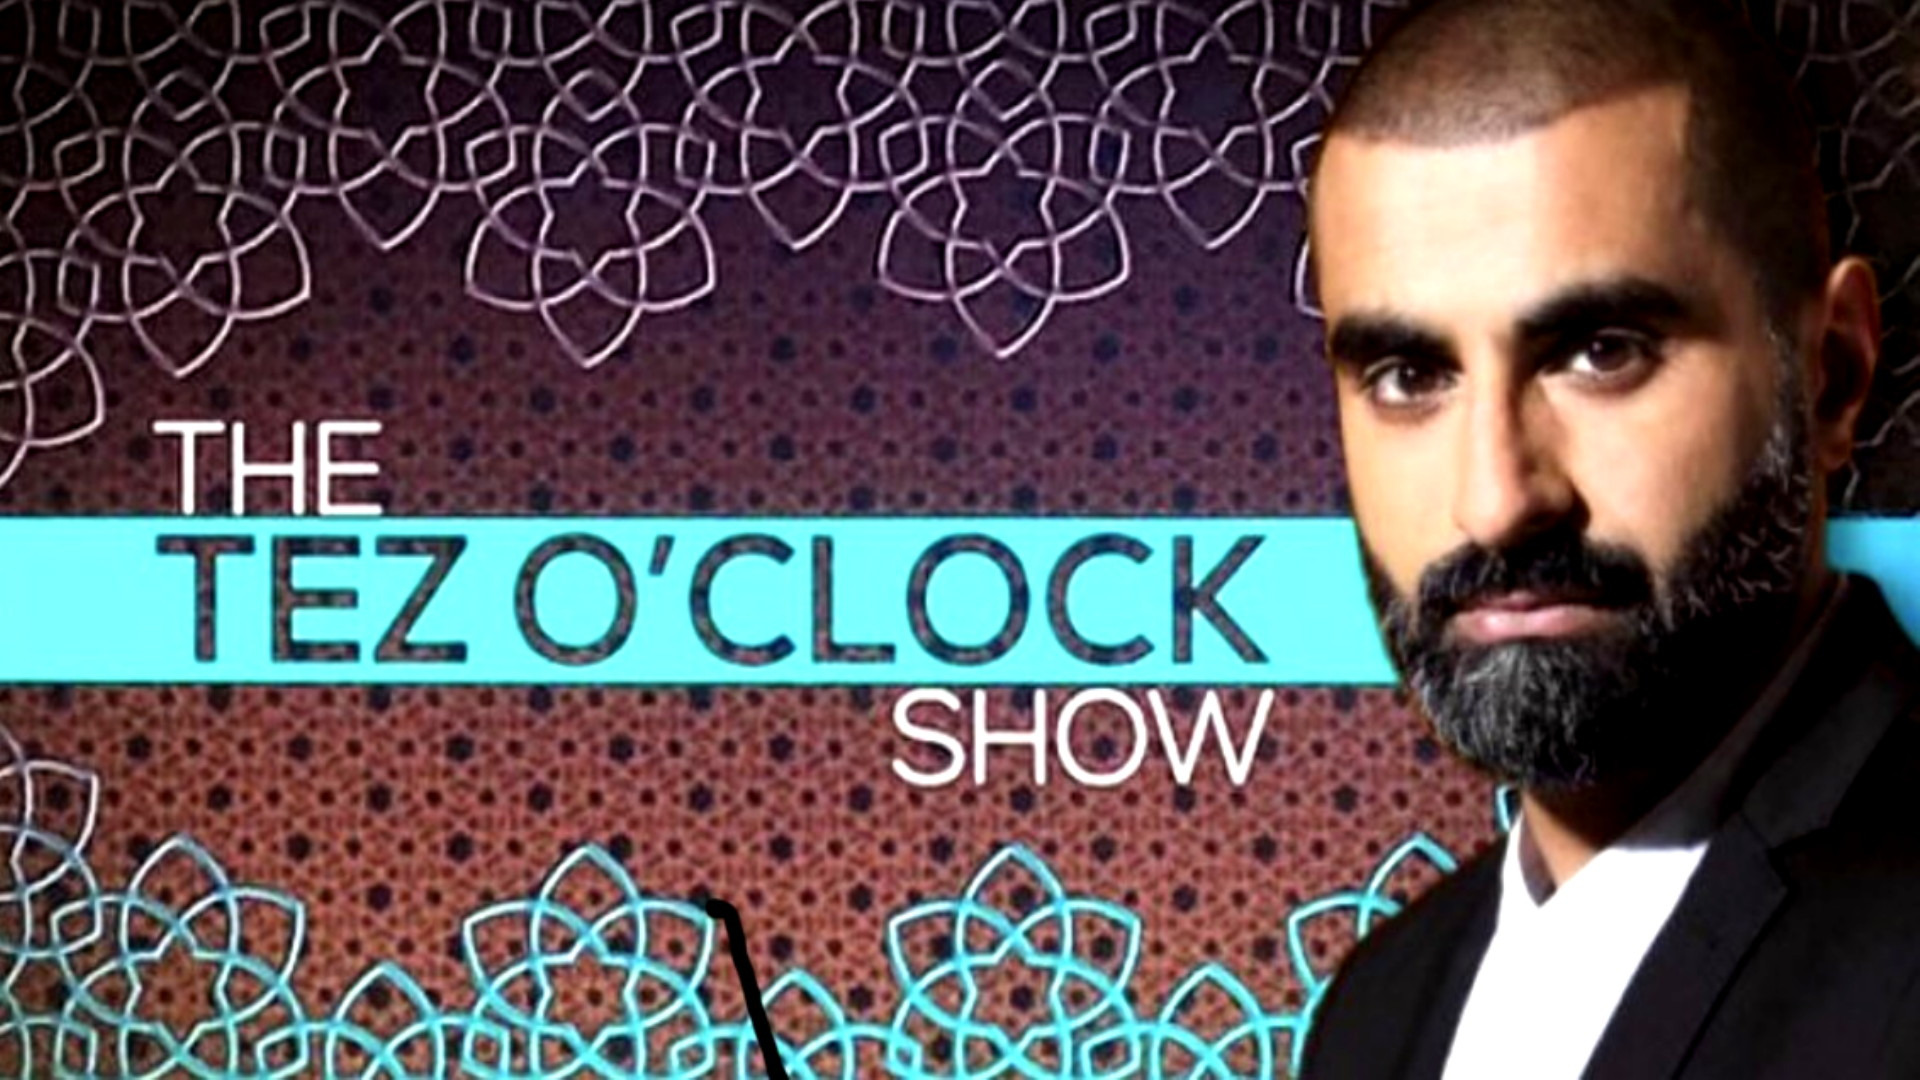 Show The Tez O'Clock Show